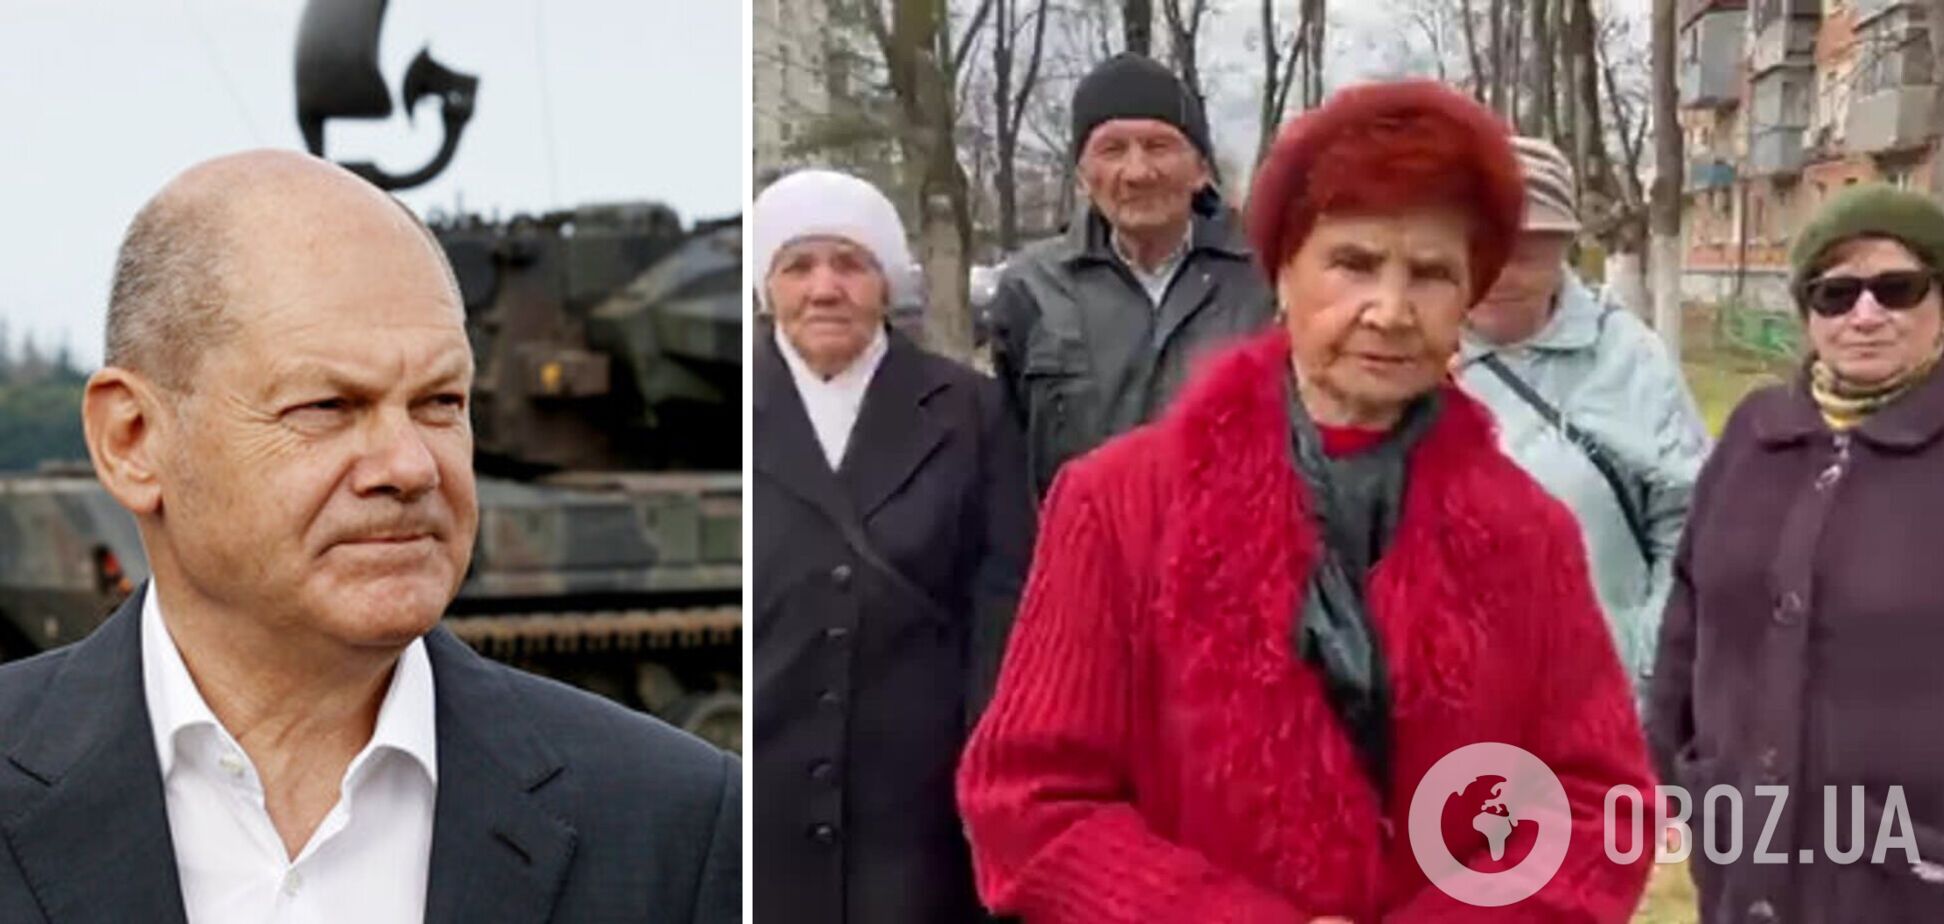 'Ты будешь уничтожен': пенсионеры из 'отряда' Путина пригрозили Шольцу из-за танков для Украины и рассказали о 'мощи' армии РФ. Видео